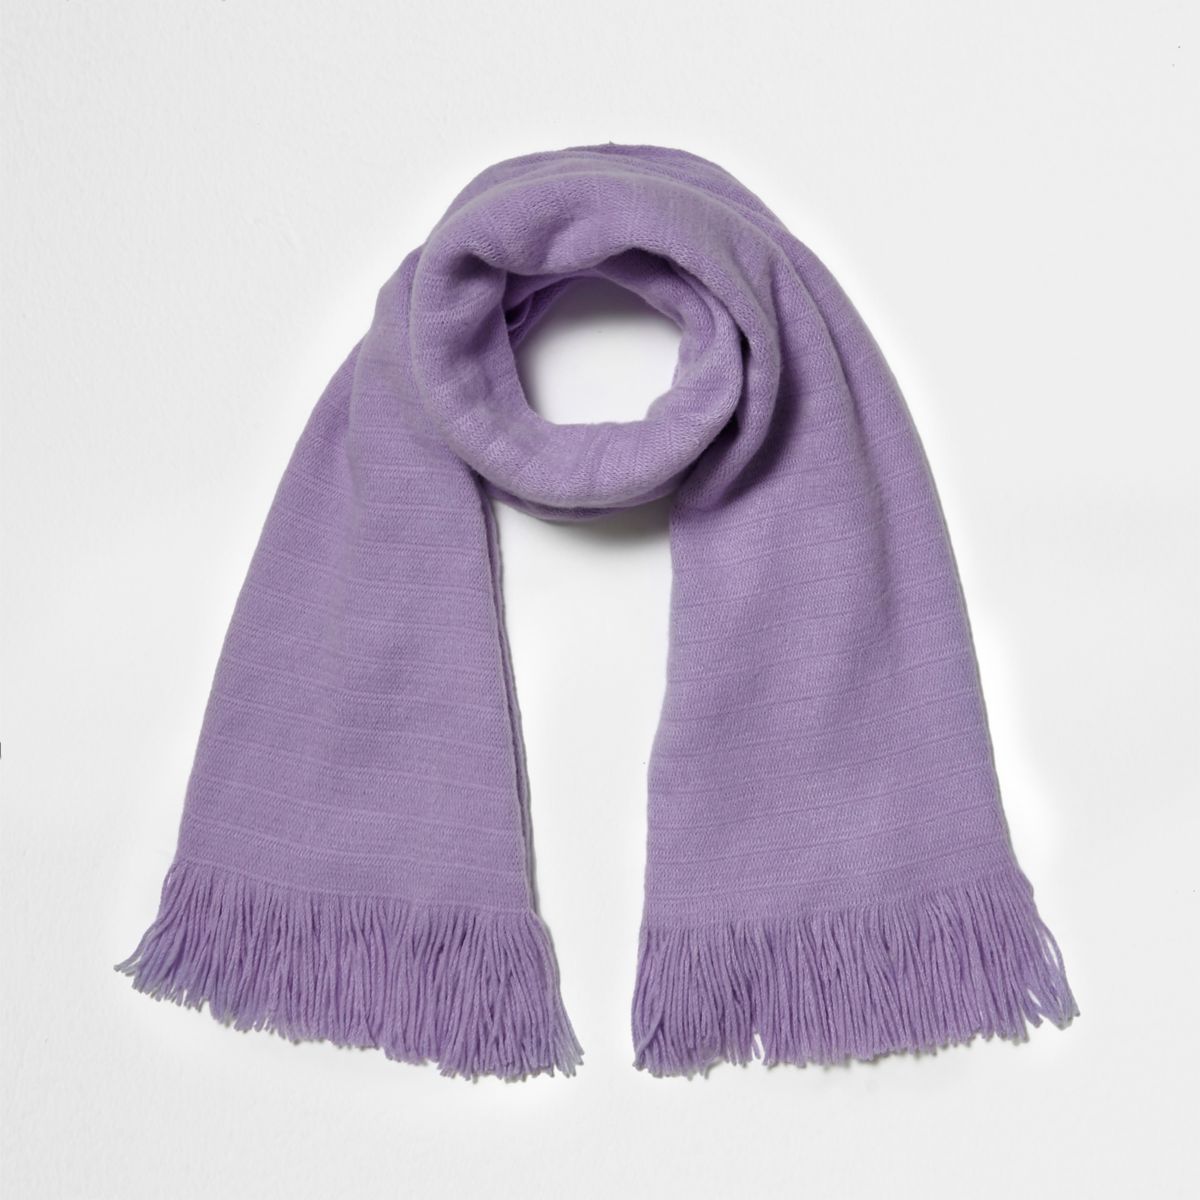 Light purple blanket scarf - Accessories - Sale - women